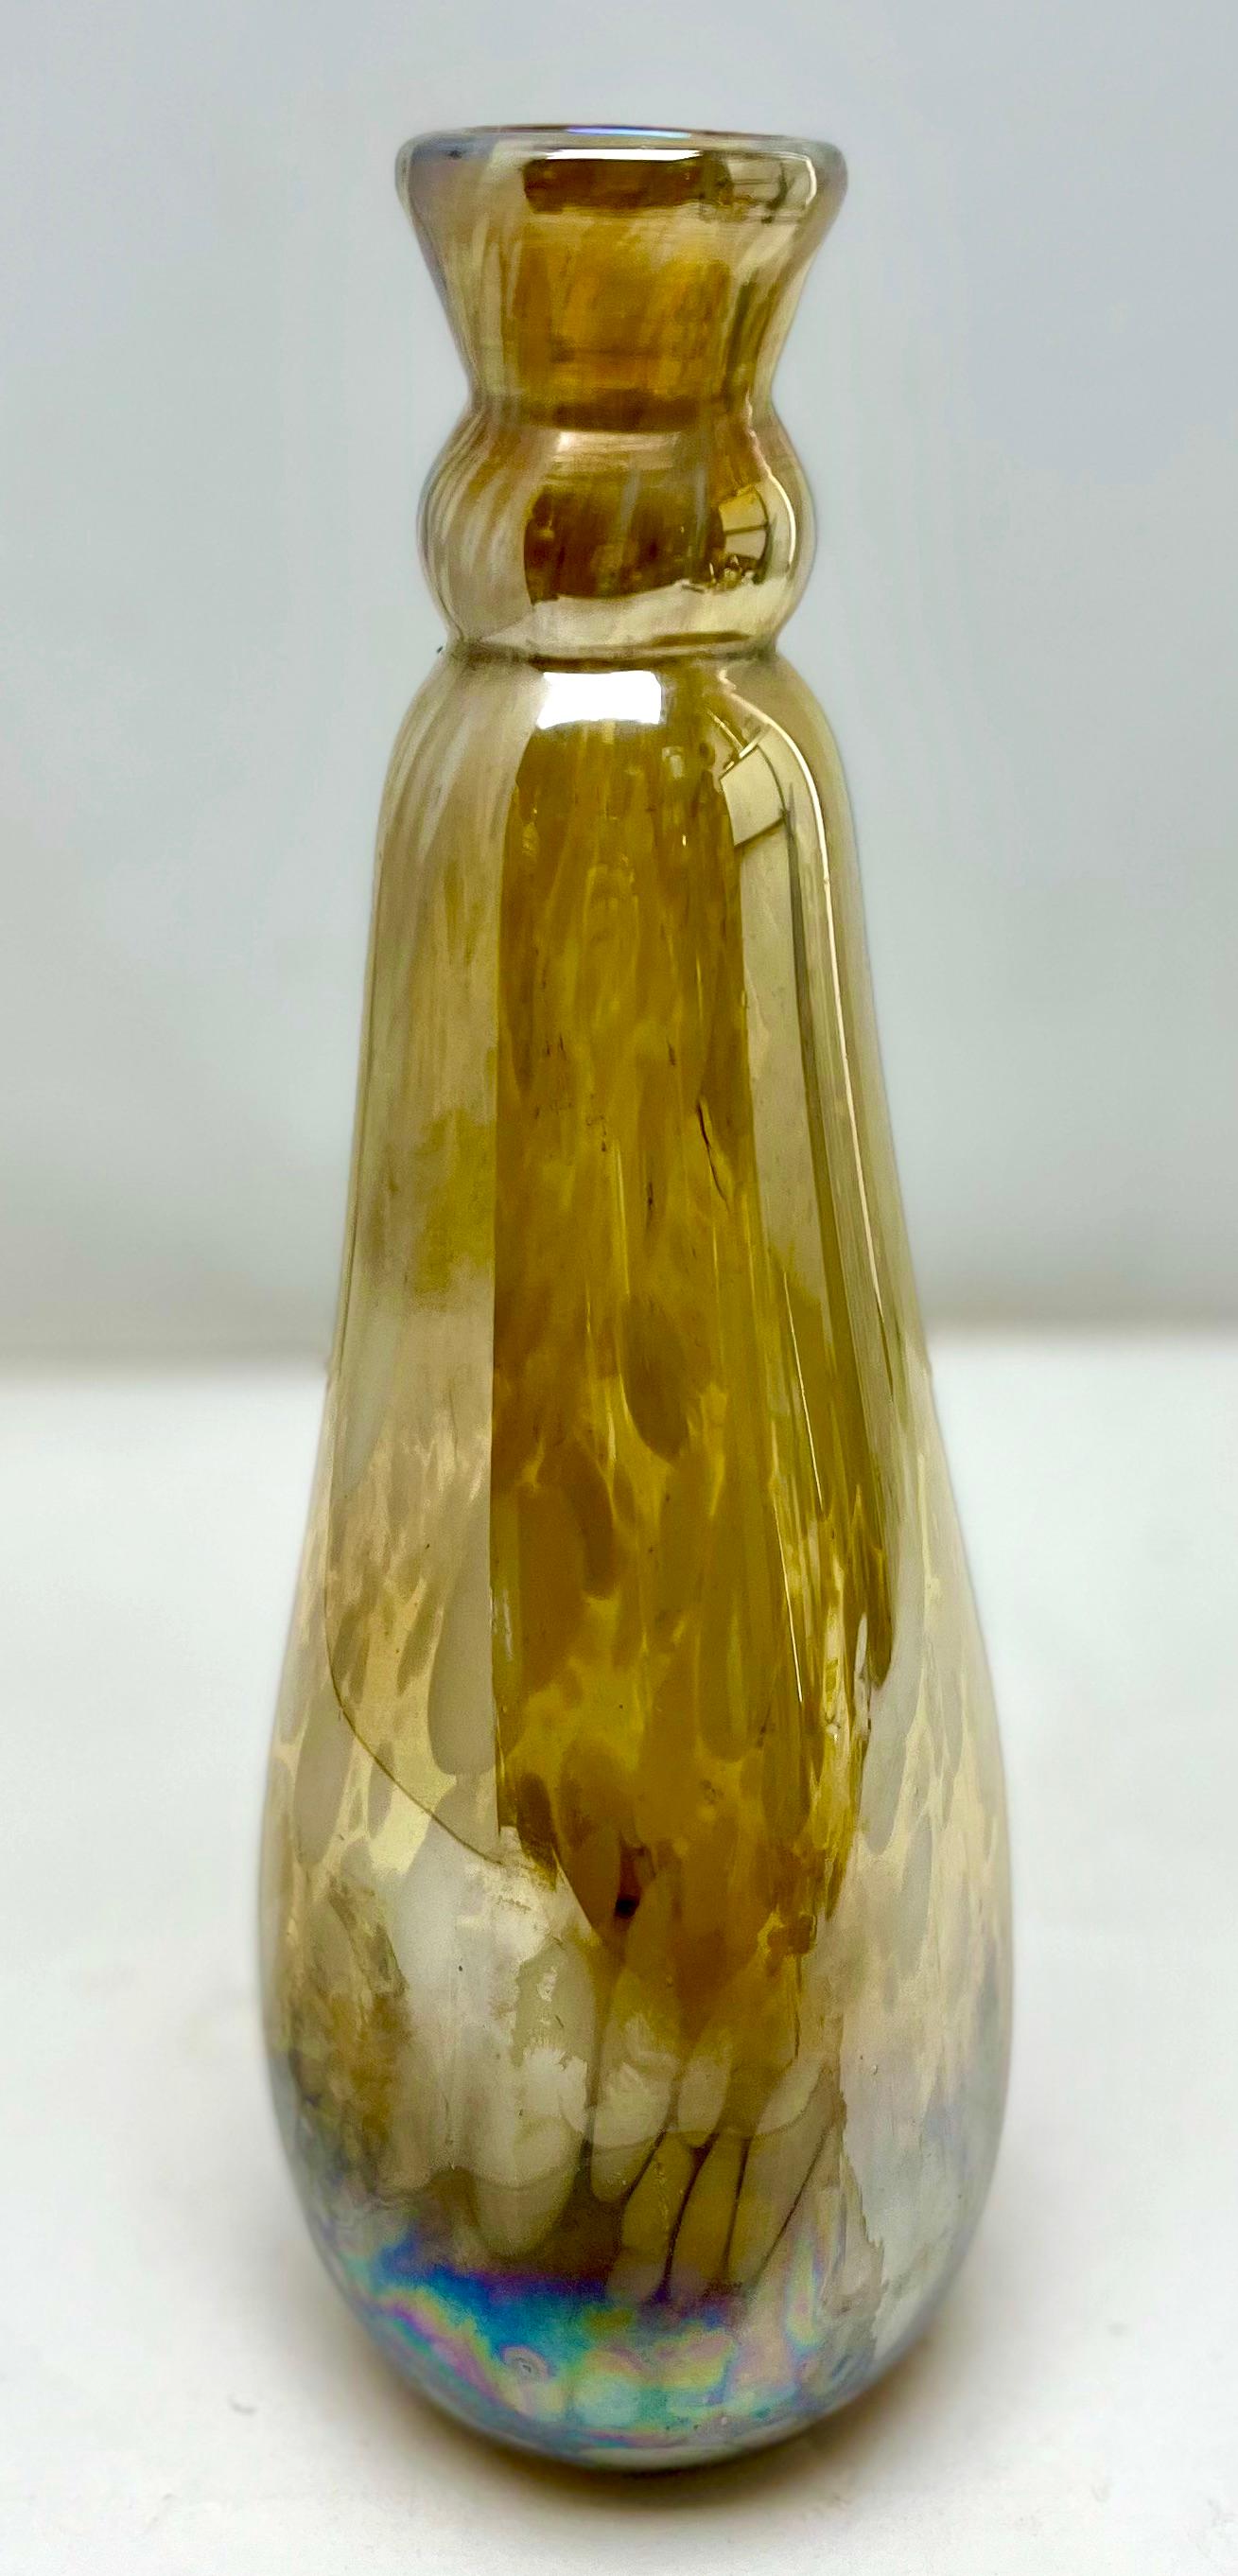 Collection Erwin Eisch, Vintage Vase, dickwandig, schwer - Kunstglas

Stilvolle, deutsche, mundgeblasene Kunstglasvase aus der Collection Erwin Eich, hergestellt in der Glashütte Eisch Frauenau zwischen 1979-1990. Erwin Eisch (Deutscher, geboren